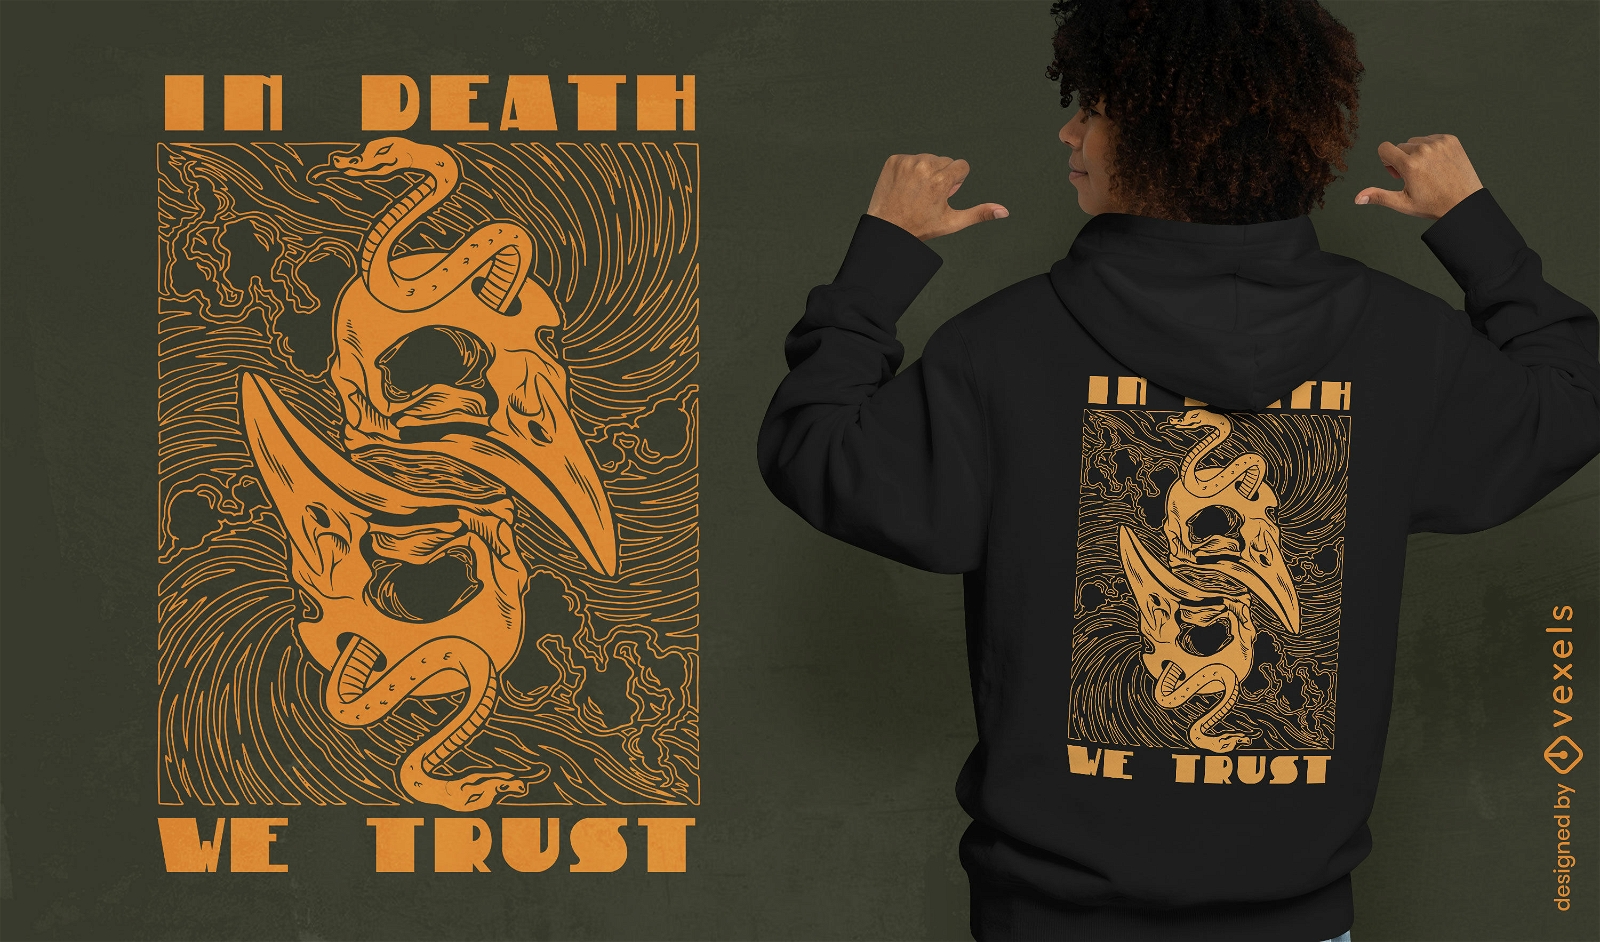 Na morte, confiamos no design de camisetas